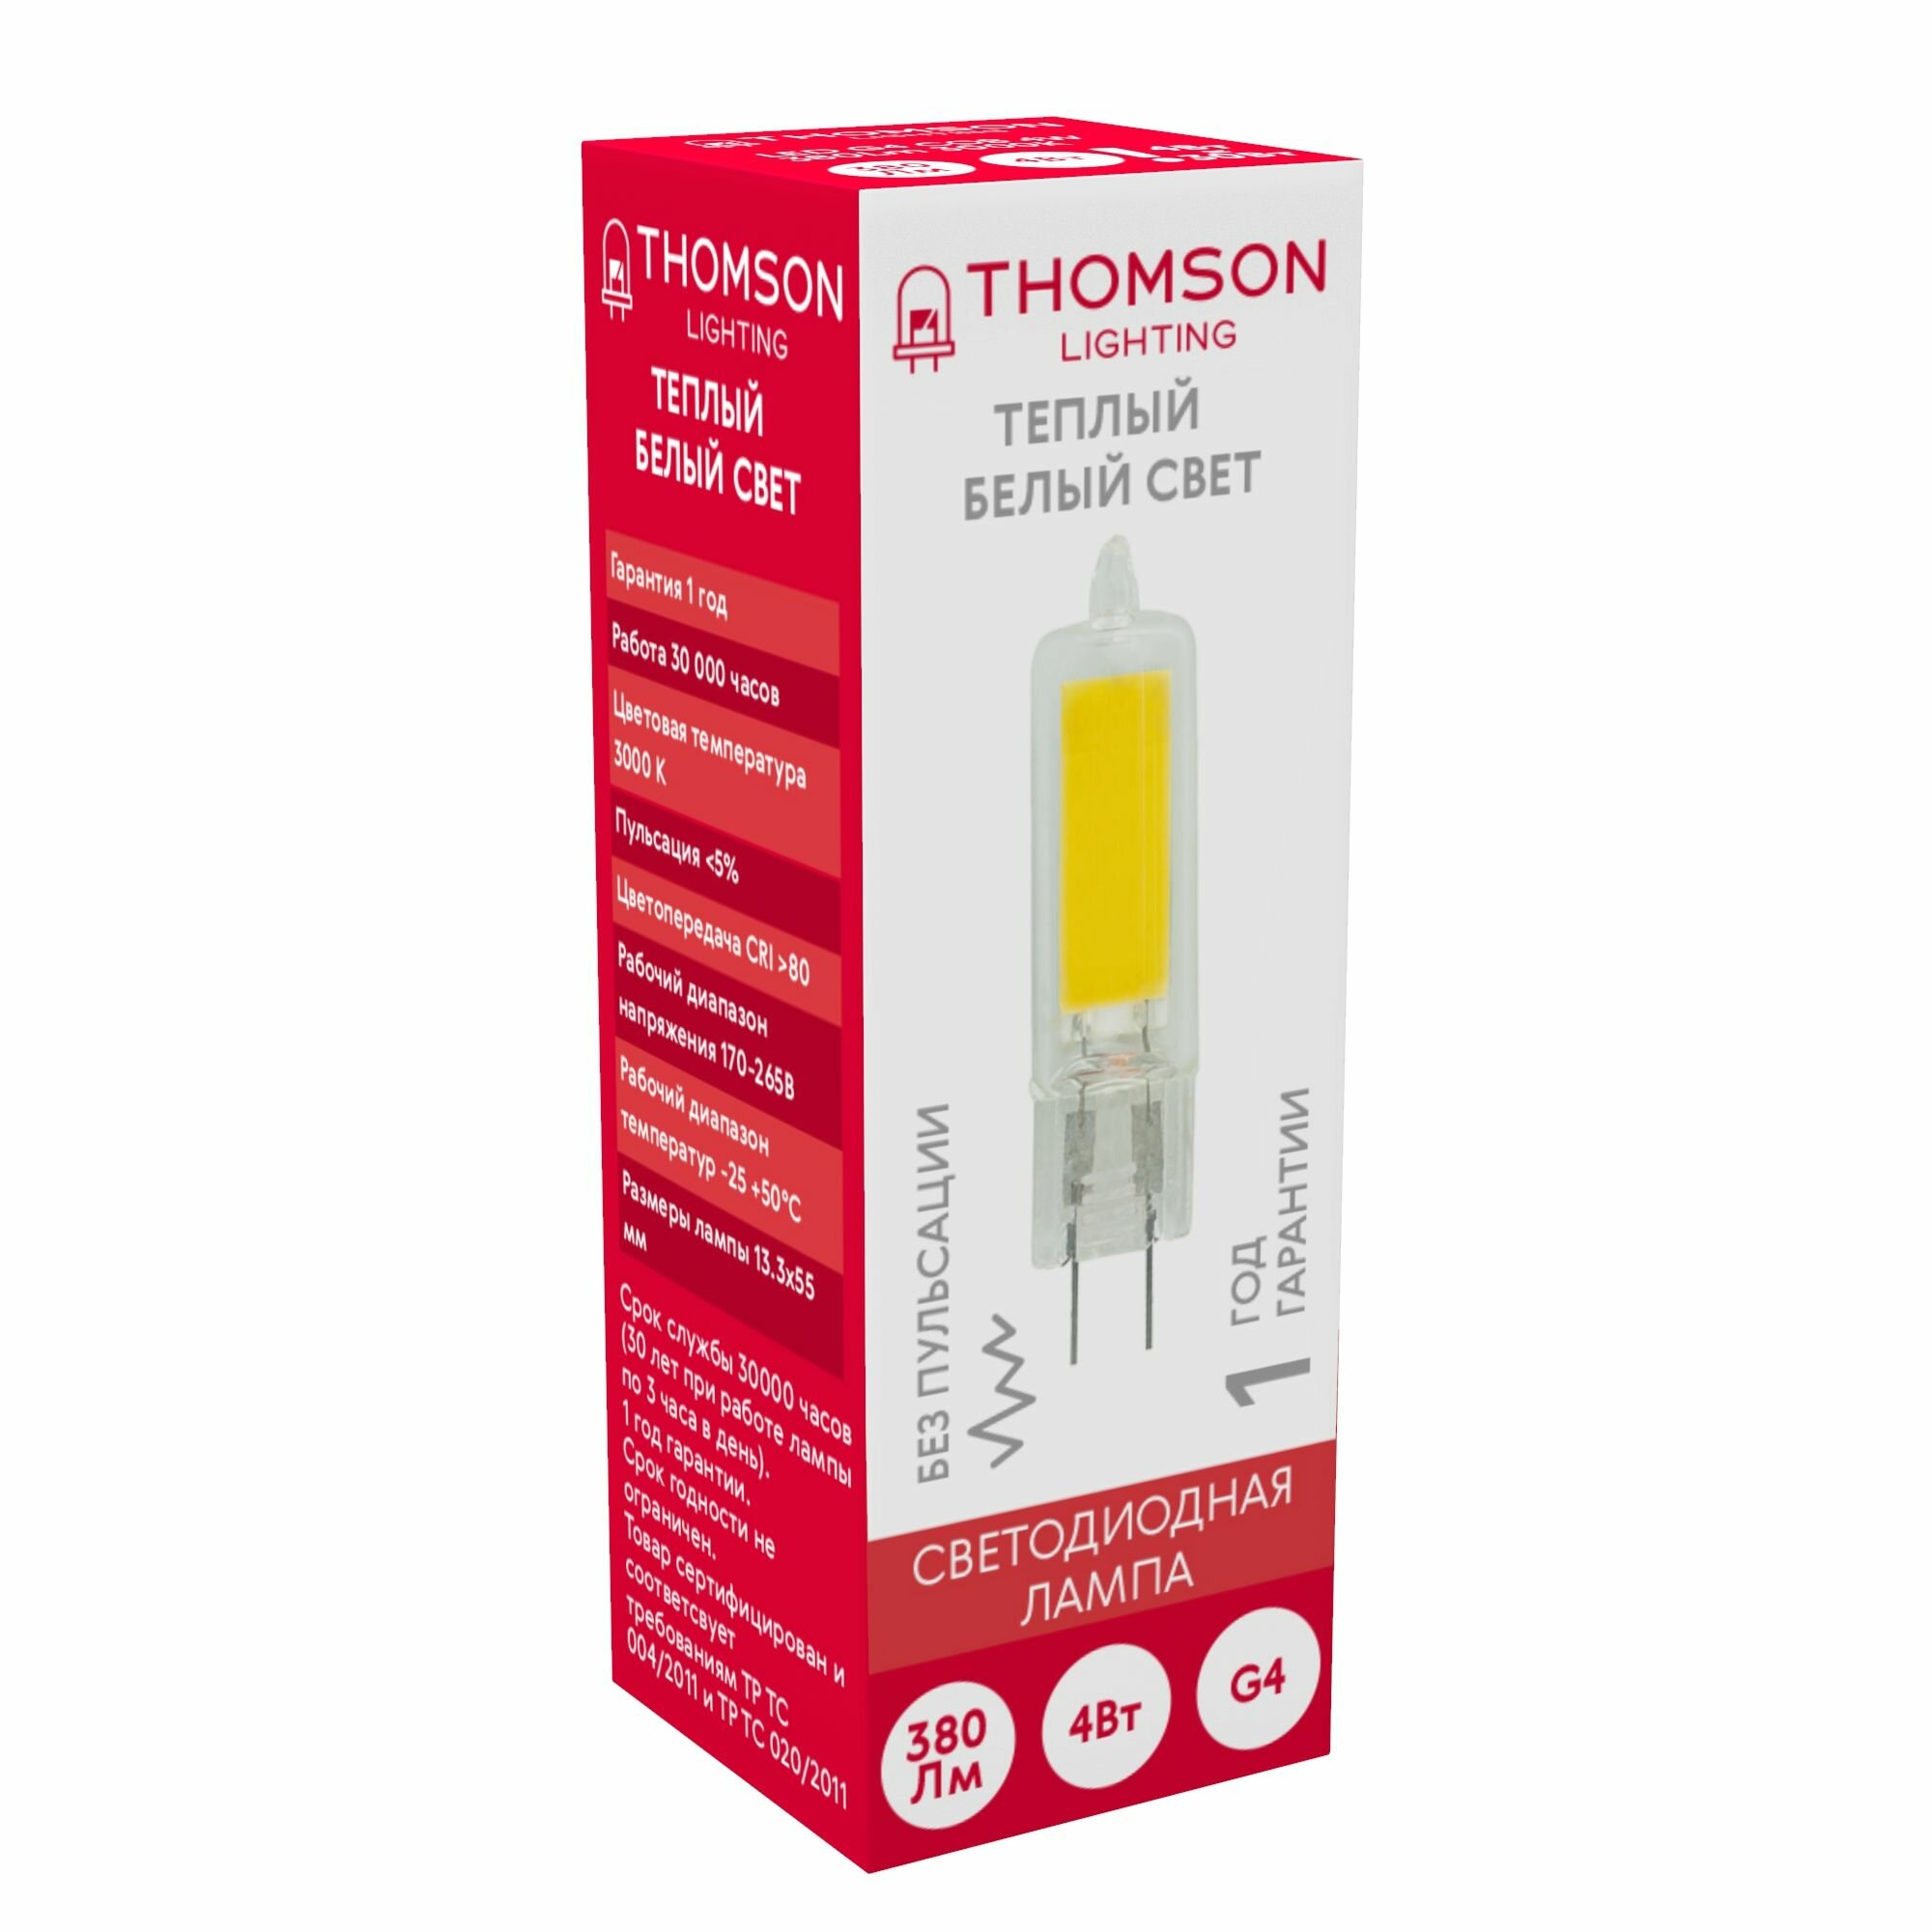 Лампочка Thomson TH-B4218 4 Вт, G4, 3000К, капсула, теплый белый свет